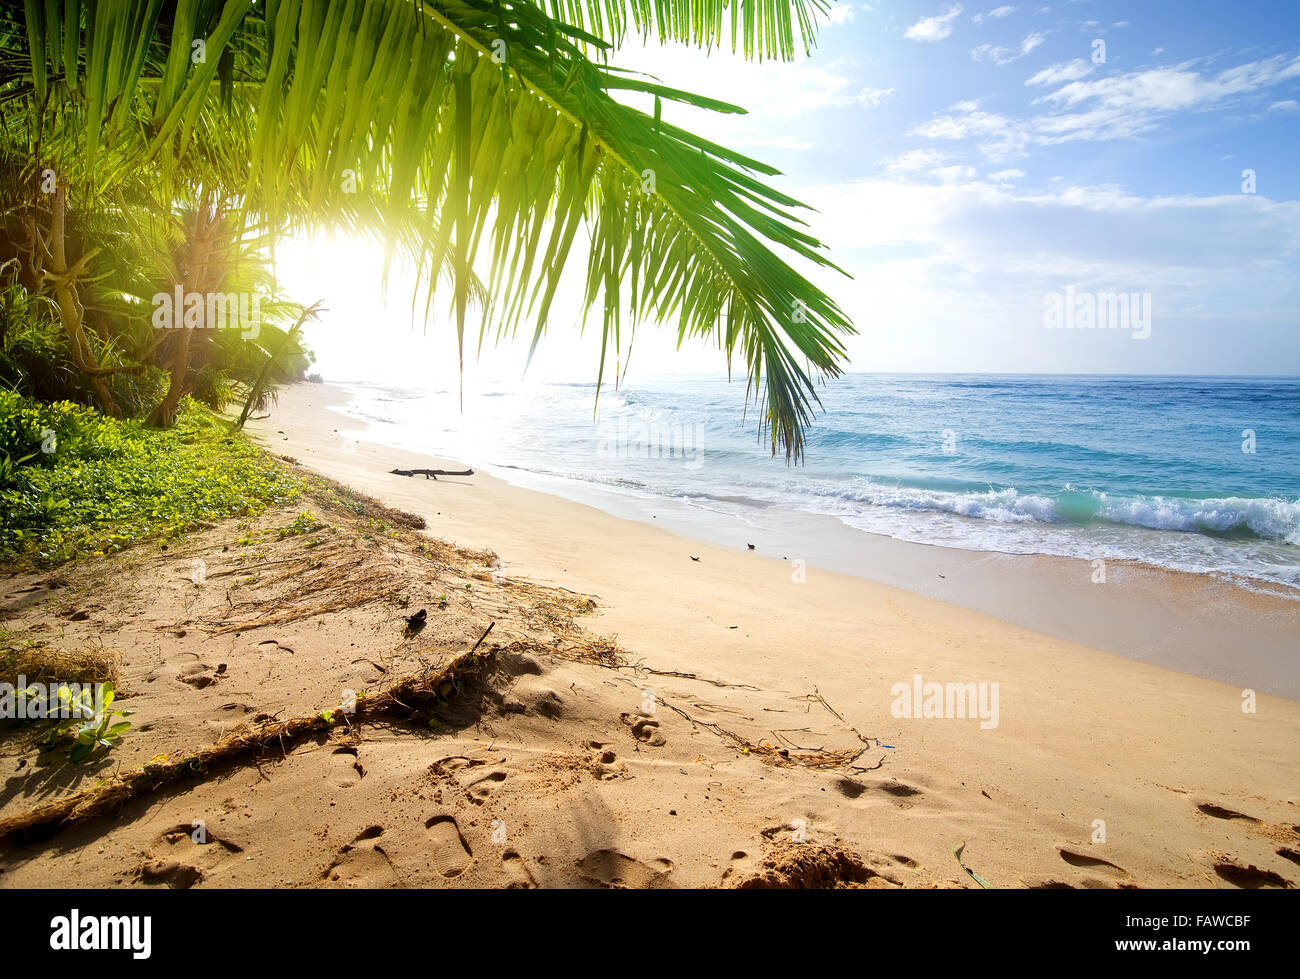 Spiaggia di sabbia con verde palme vicino oceano Foto Stock